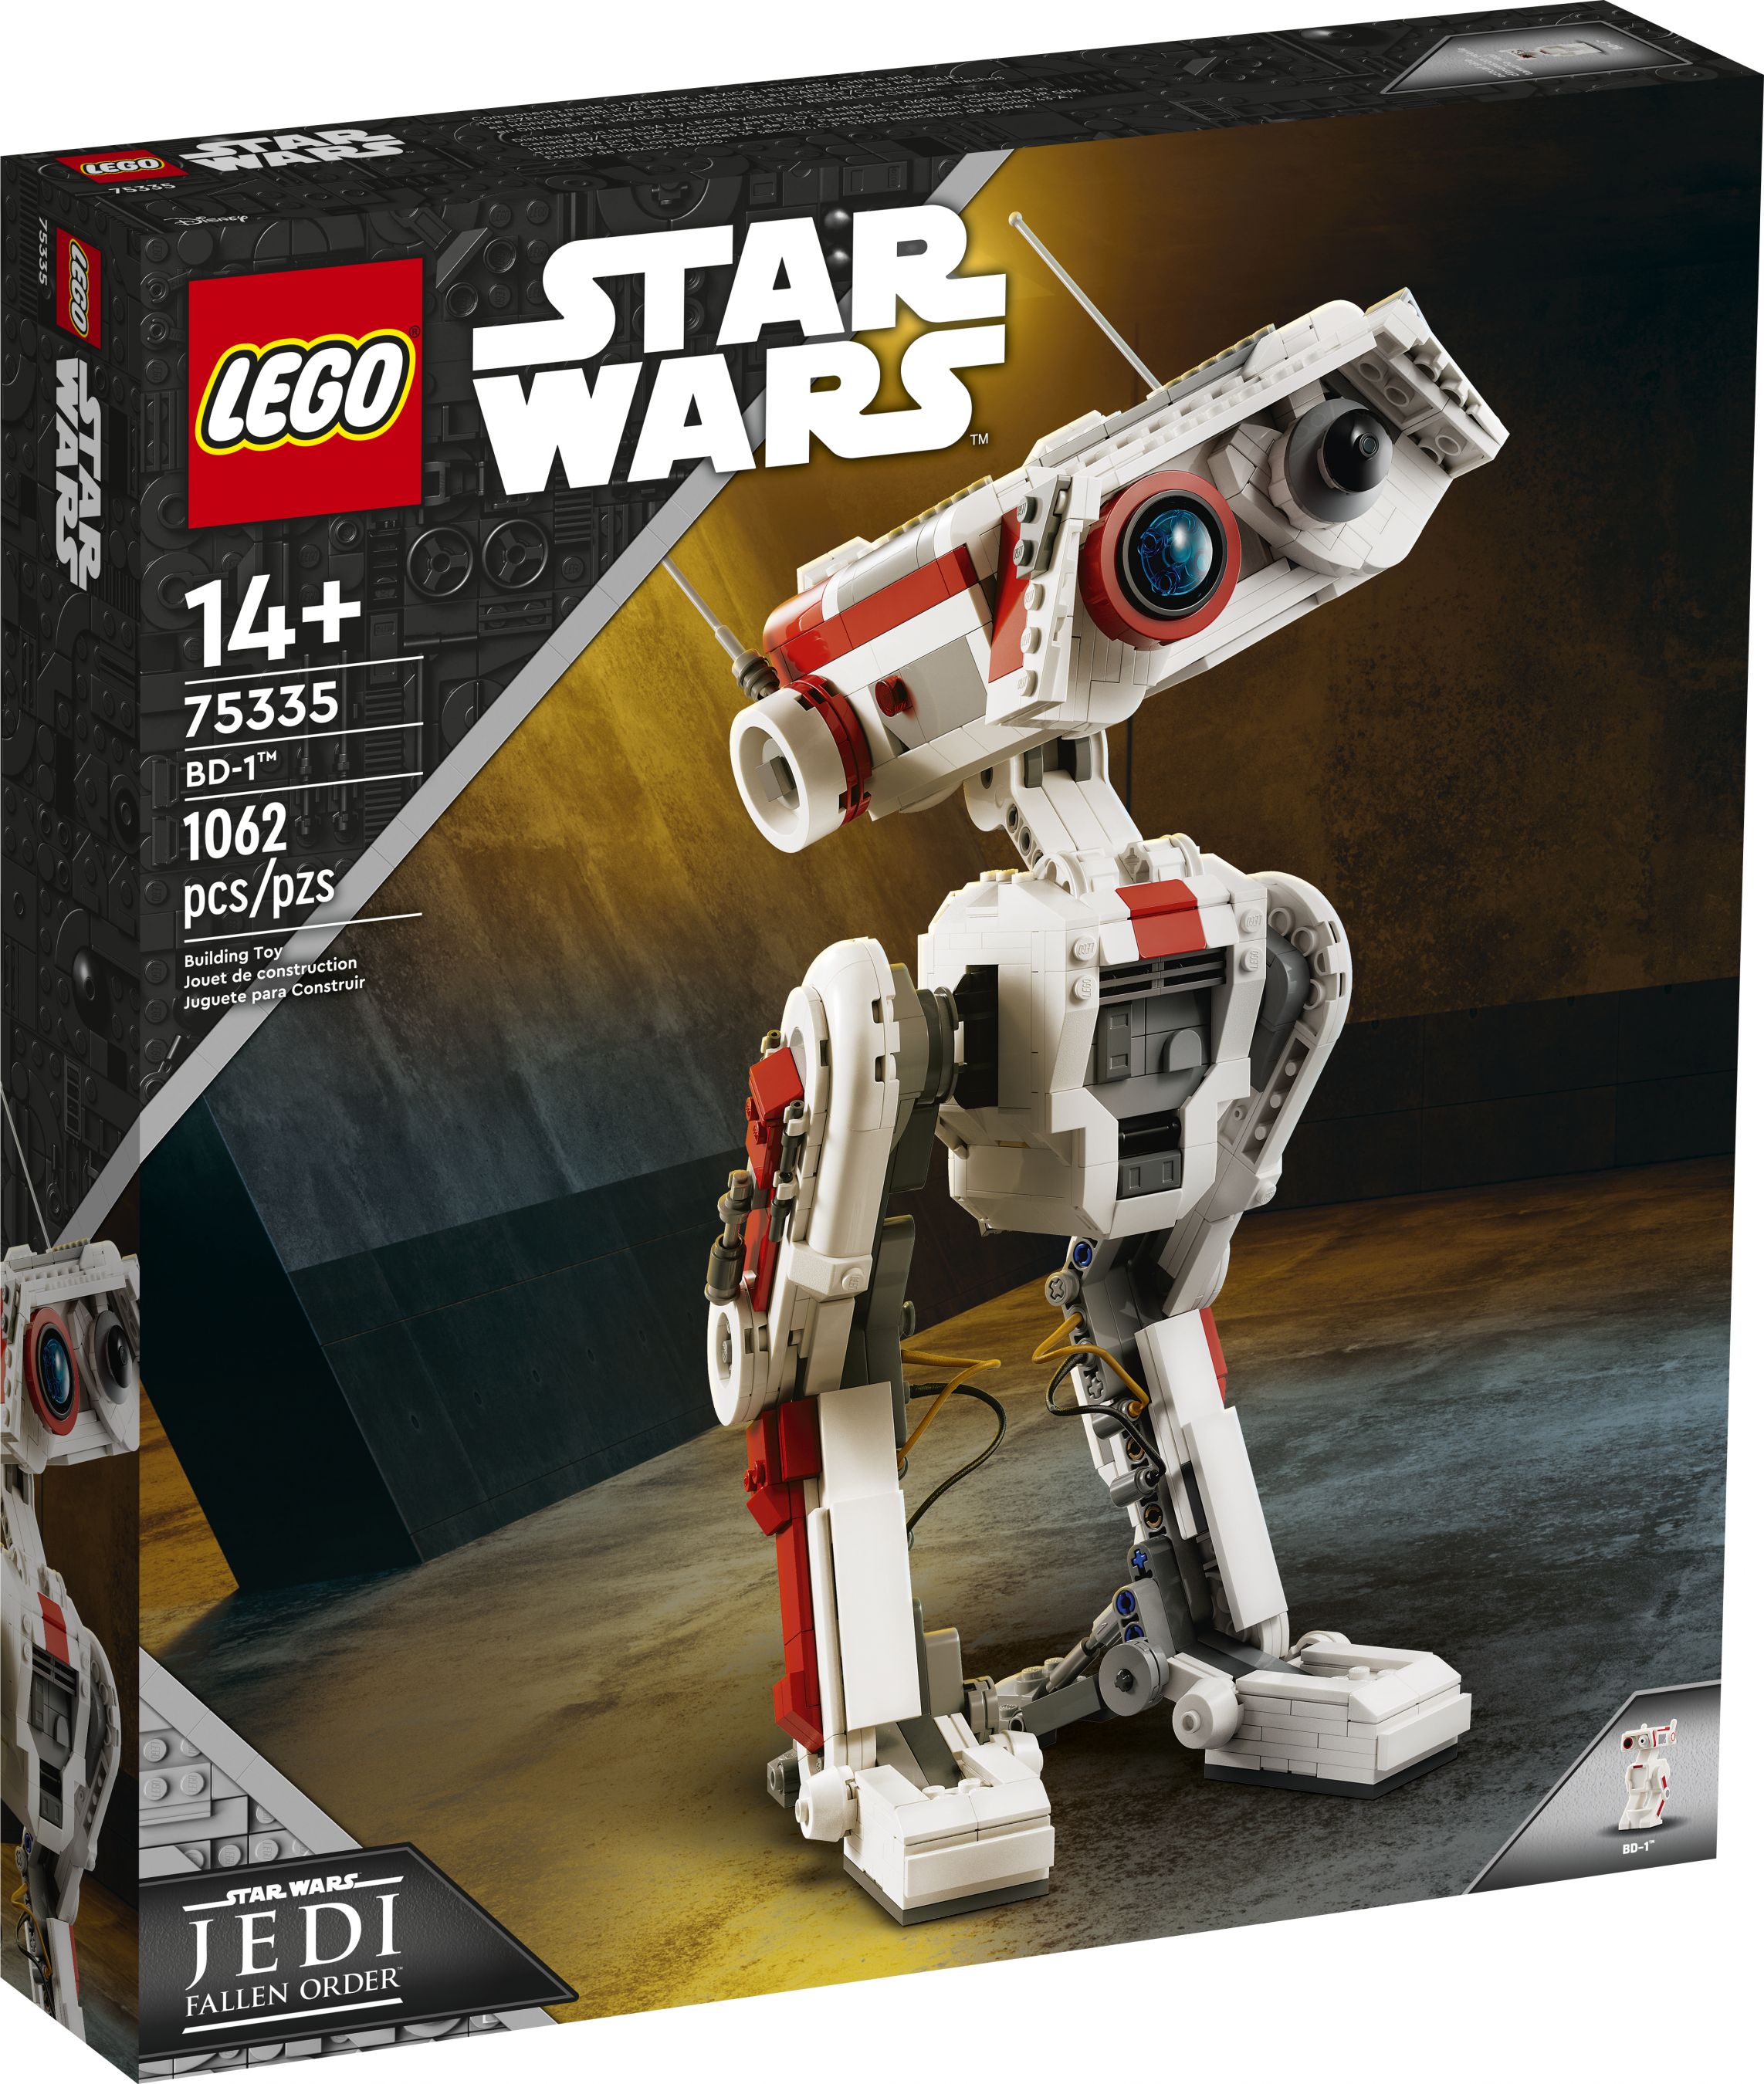 LEGO Star Wars 75335 BD-1™ LEGO_75335_Box1_v39.jpg